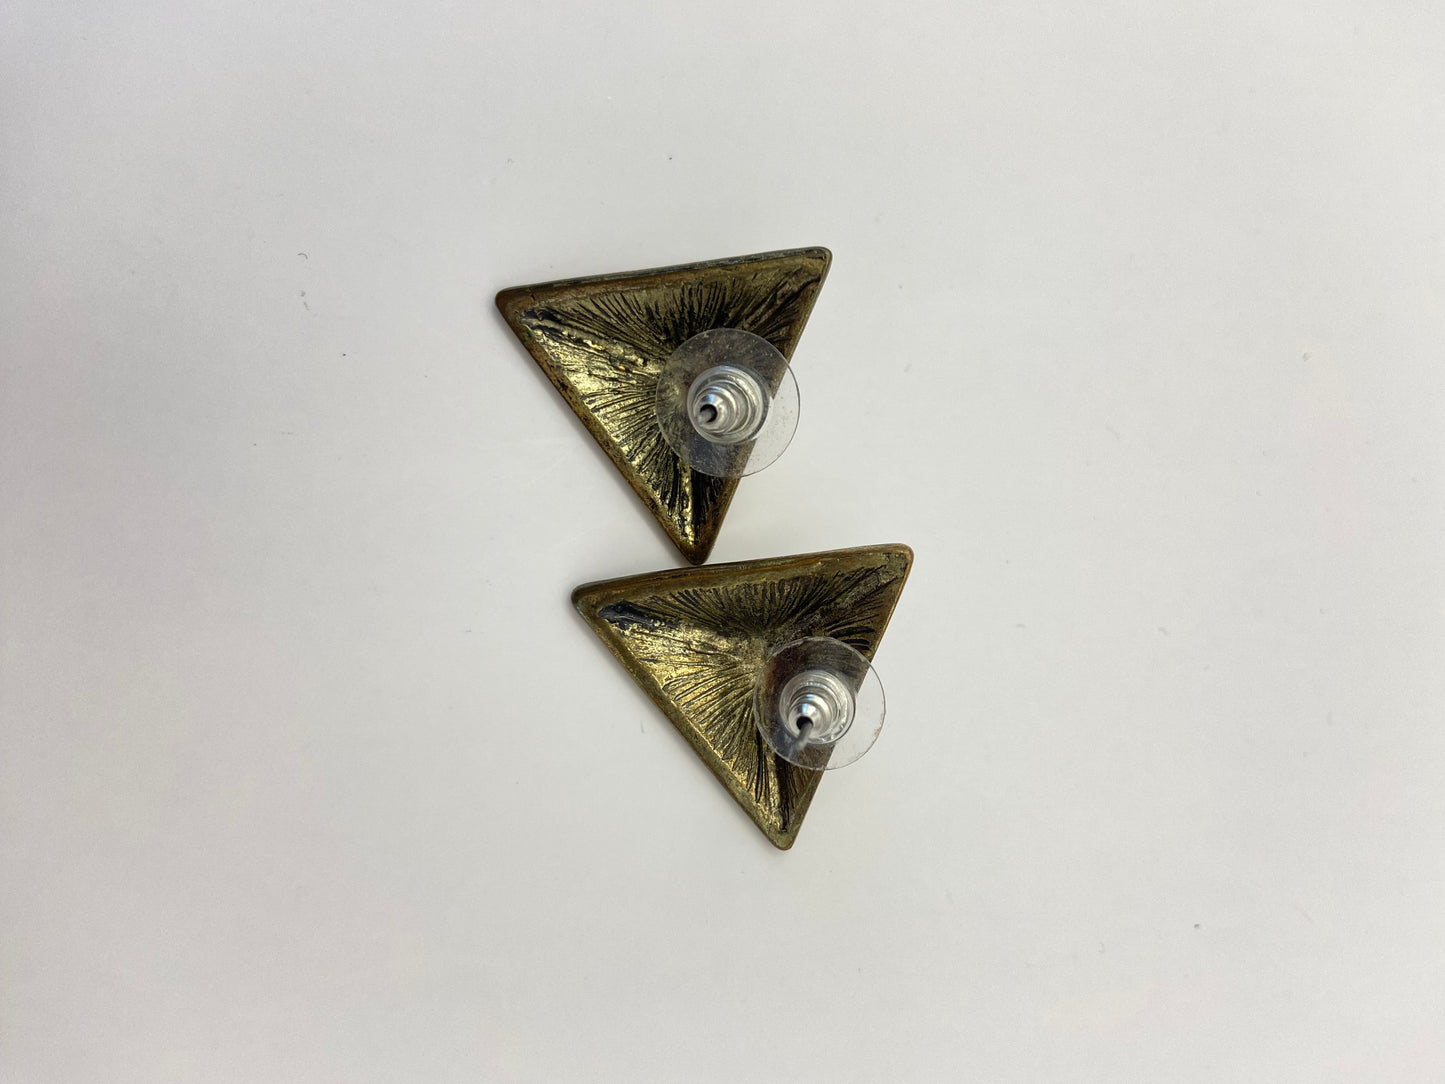 Triangle Shaped Earrings